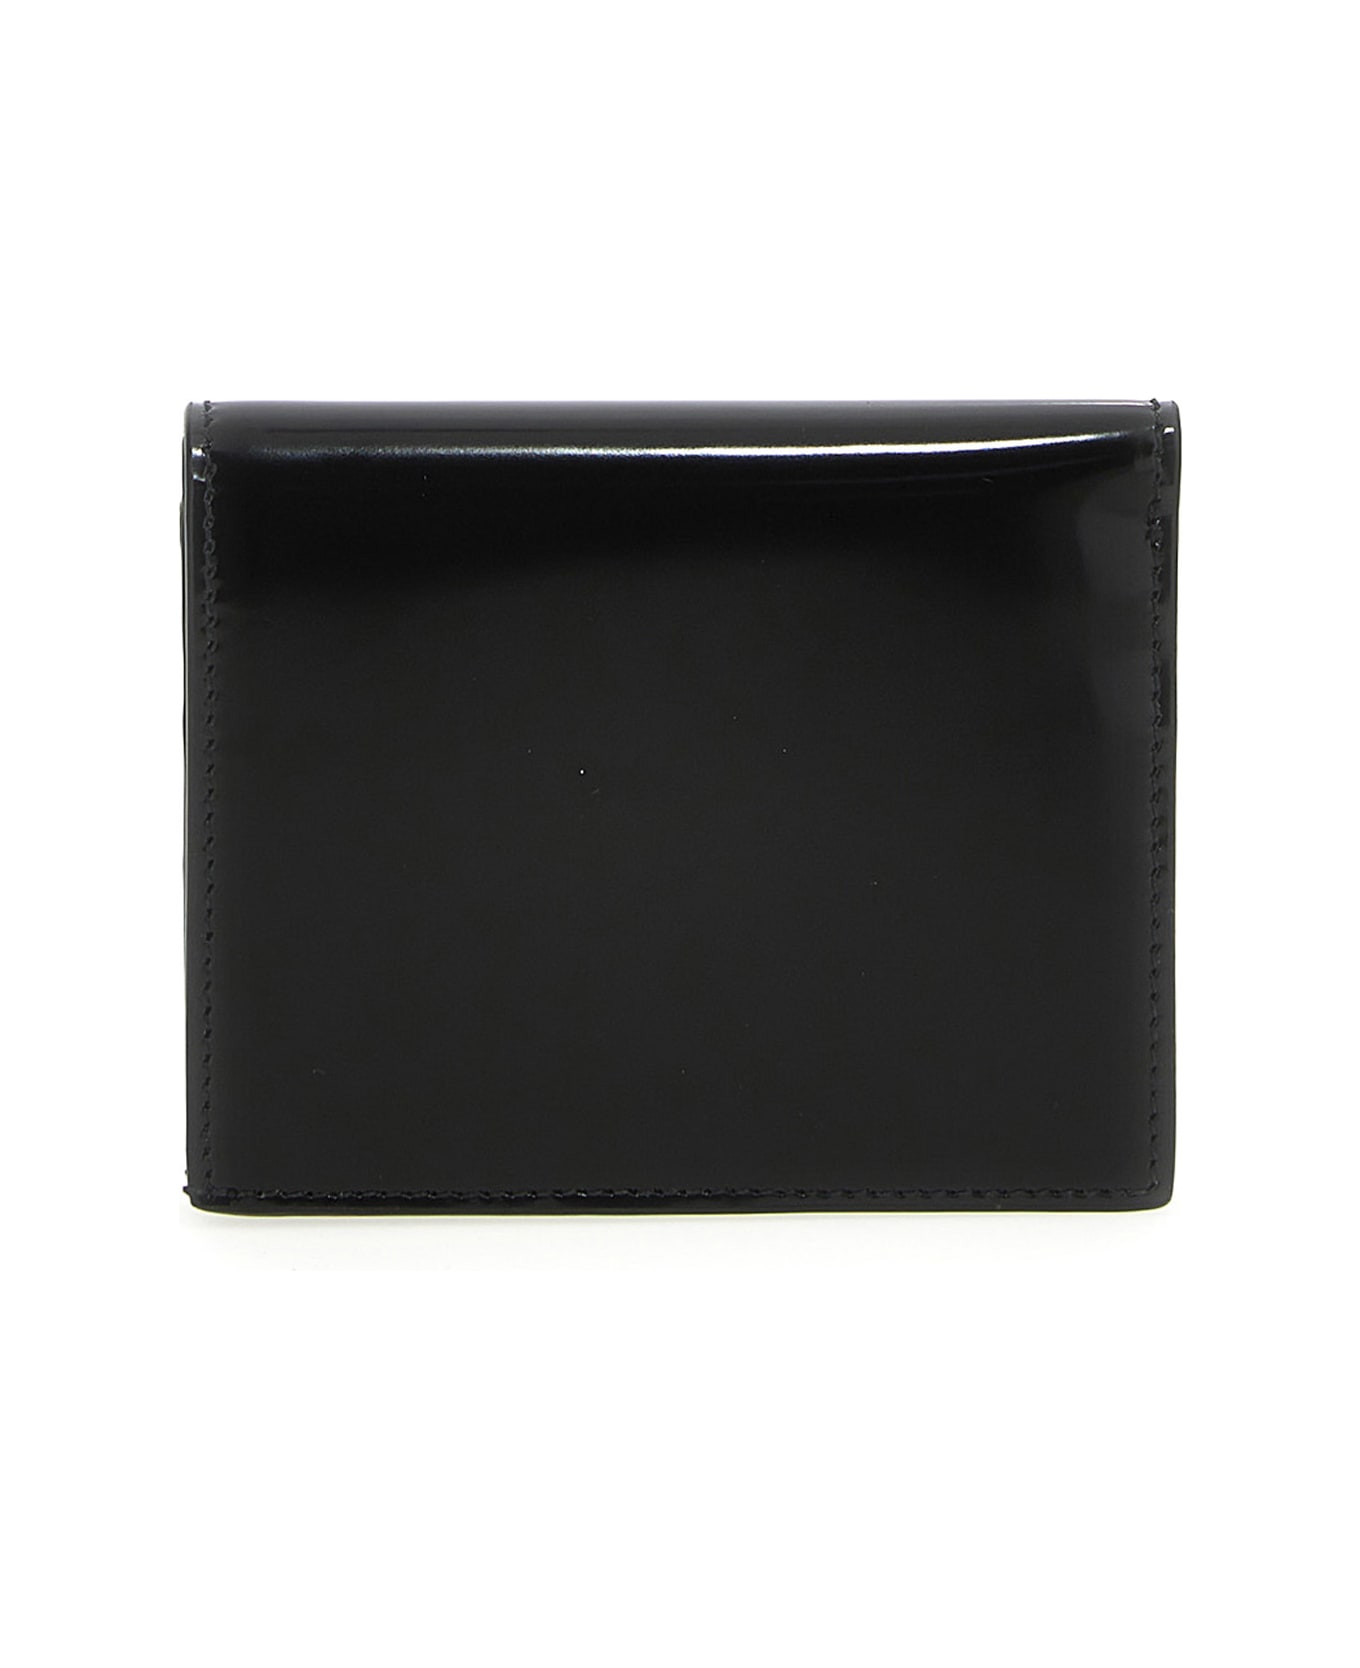 Ferragamo 'gancini' Wallet - Black   財布